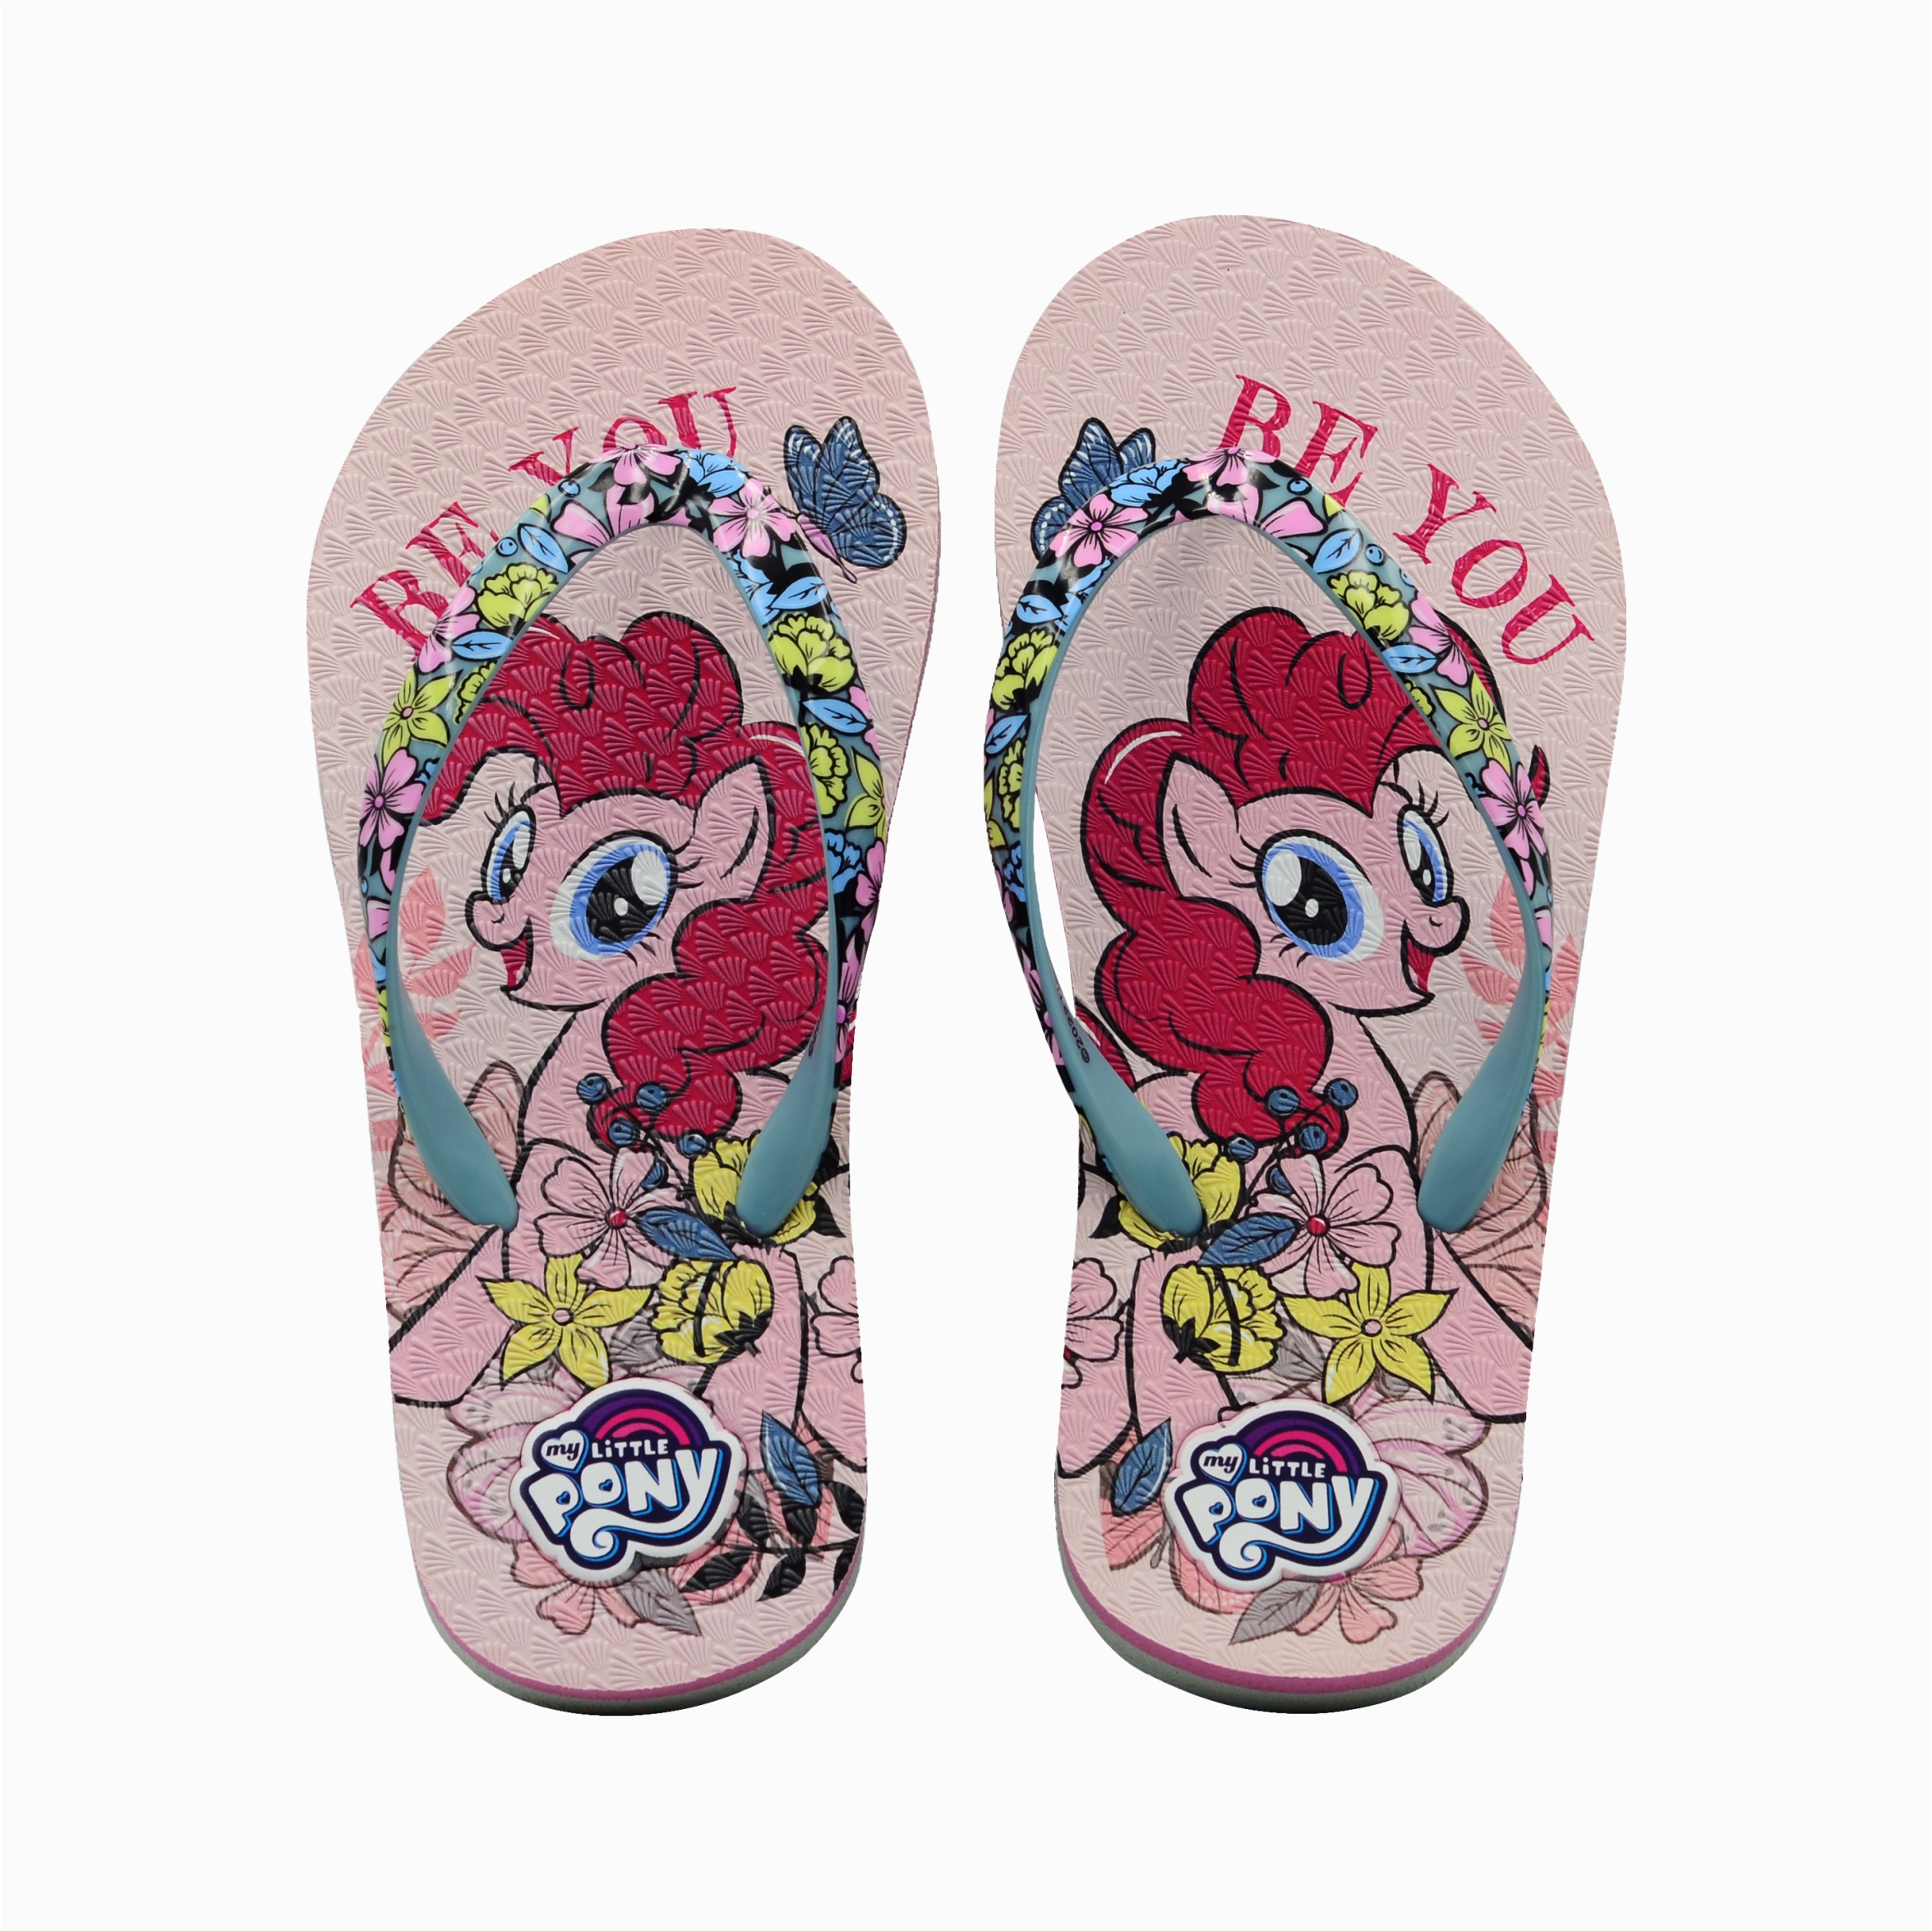 My Little Pony Slippers Girls Size 5-6 My Little Pony MANE WINGS TWILIGHT  CUTE!! | eBay